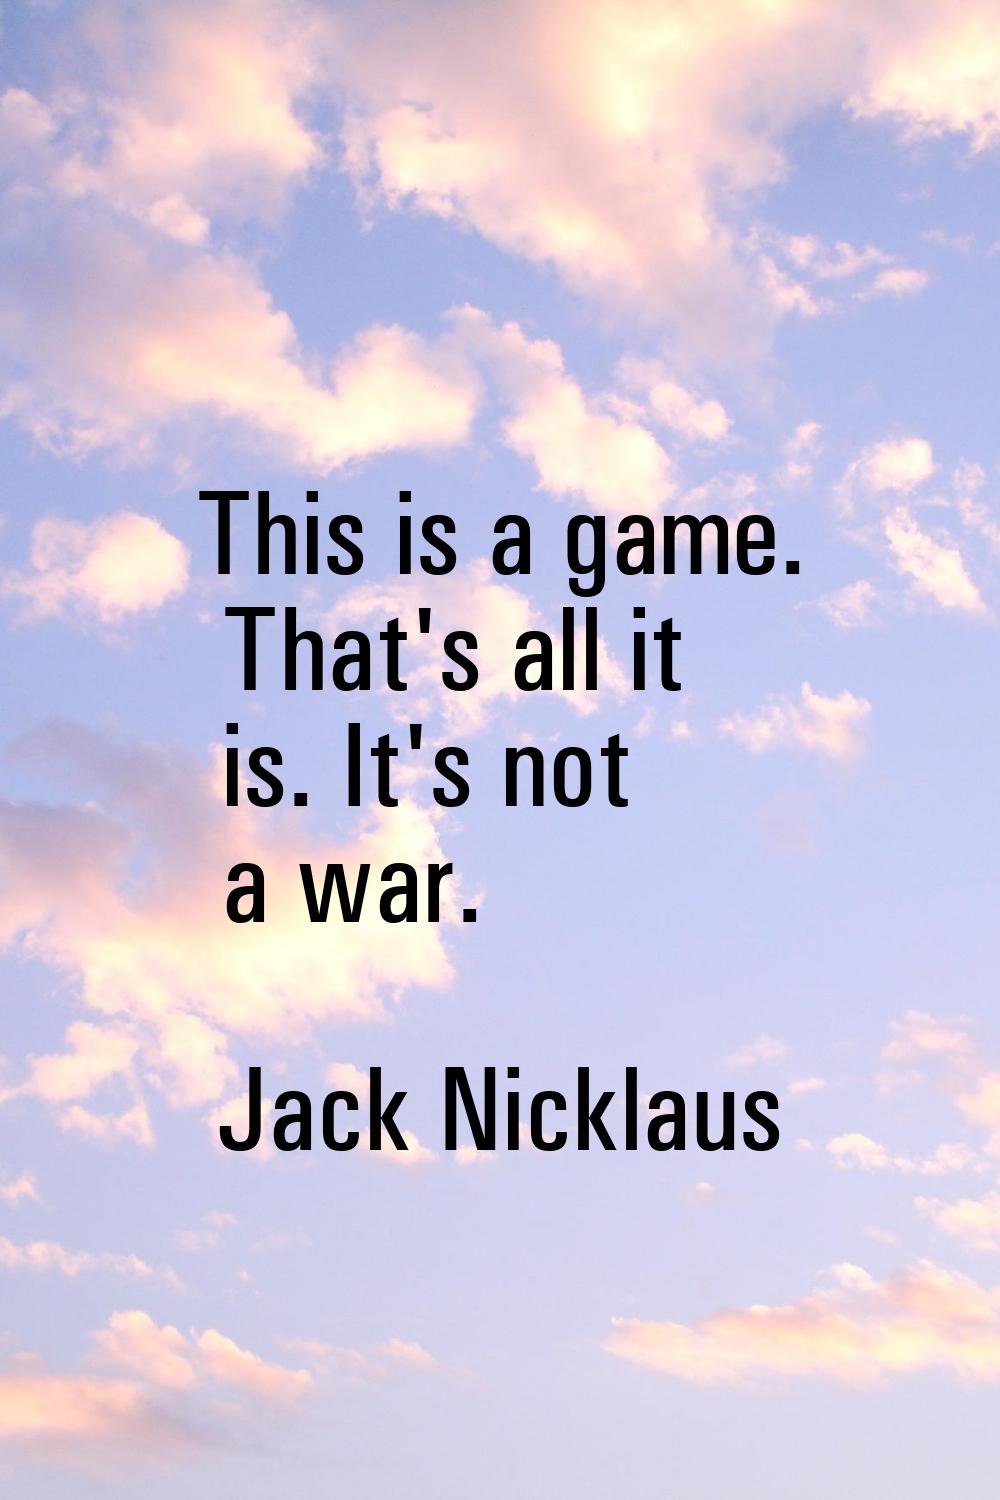 This is a game. That's all it is. It's not a war.